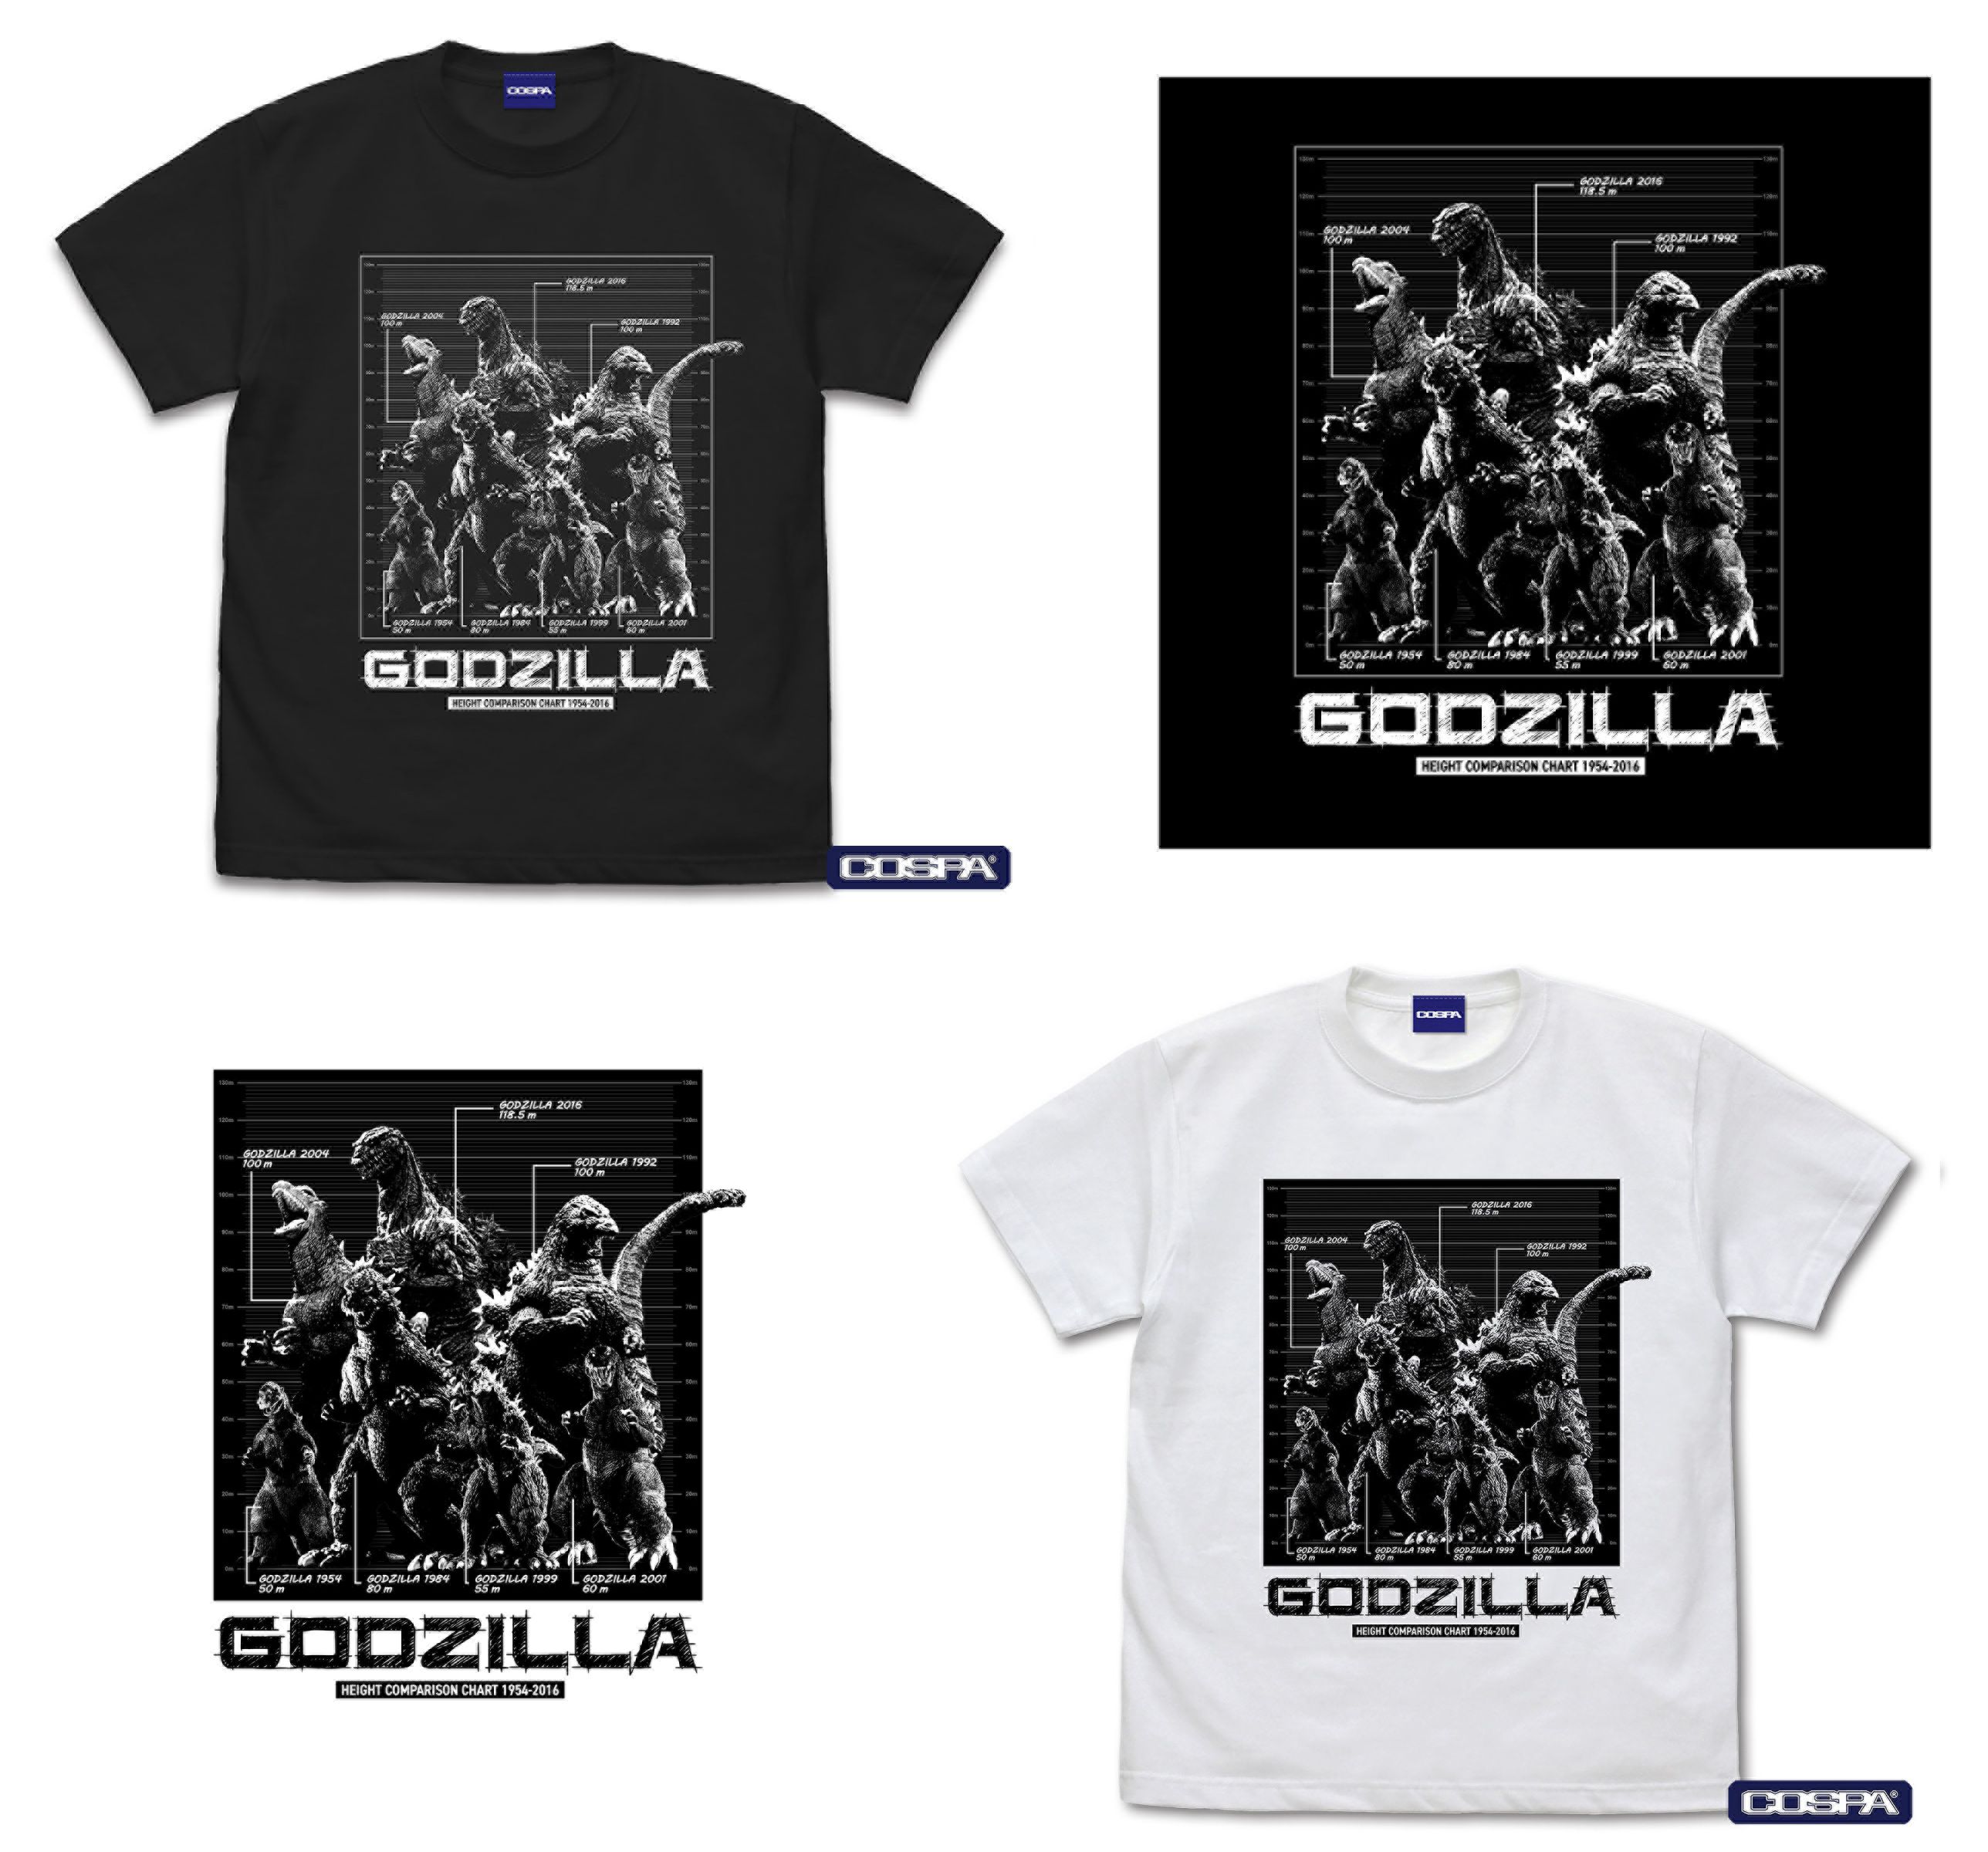 Cospa Announces New Godzilla T-Shirts and Tote Bags | Godzilla - Toho ...